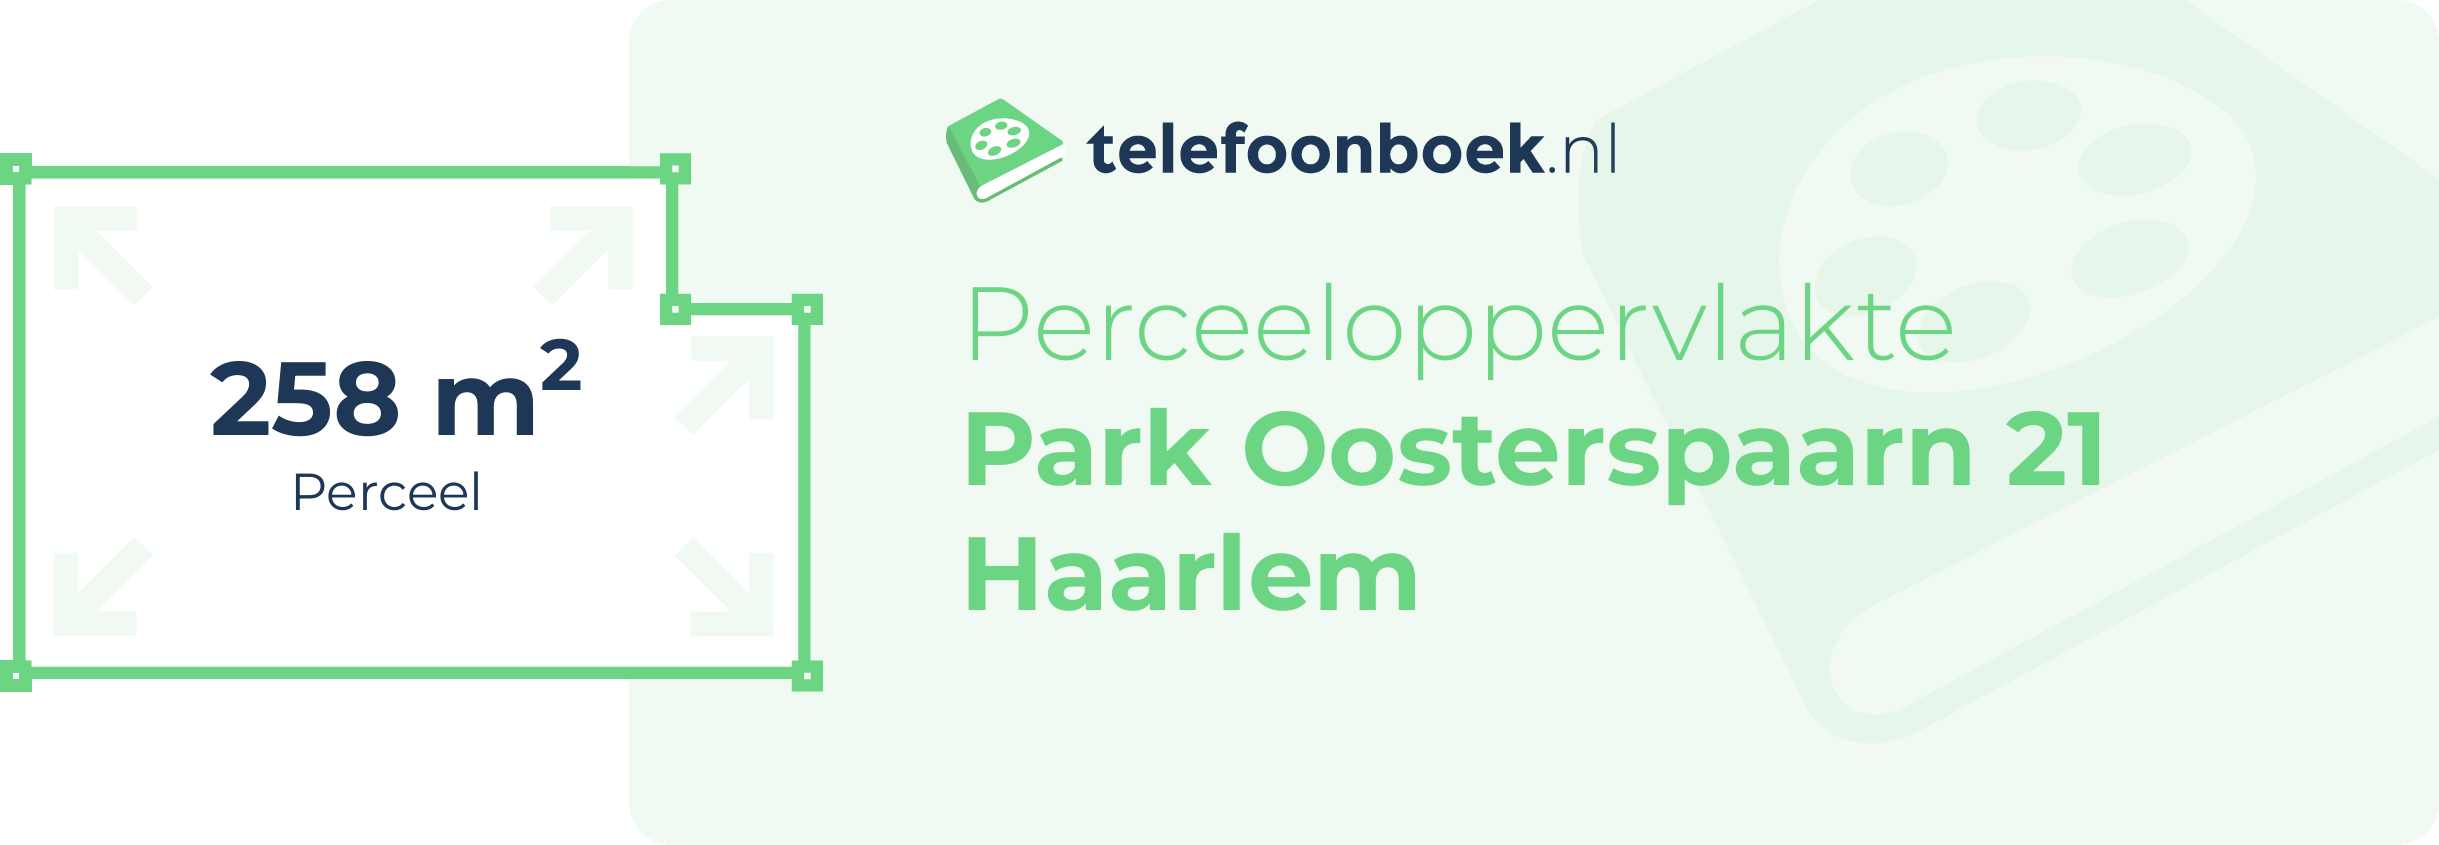 Perceeloppervlakte Park Oosterspaarn 21 Haarlem